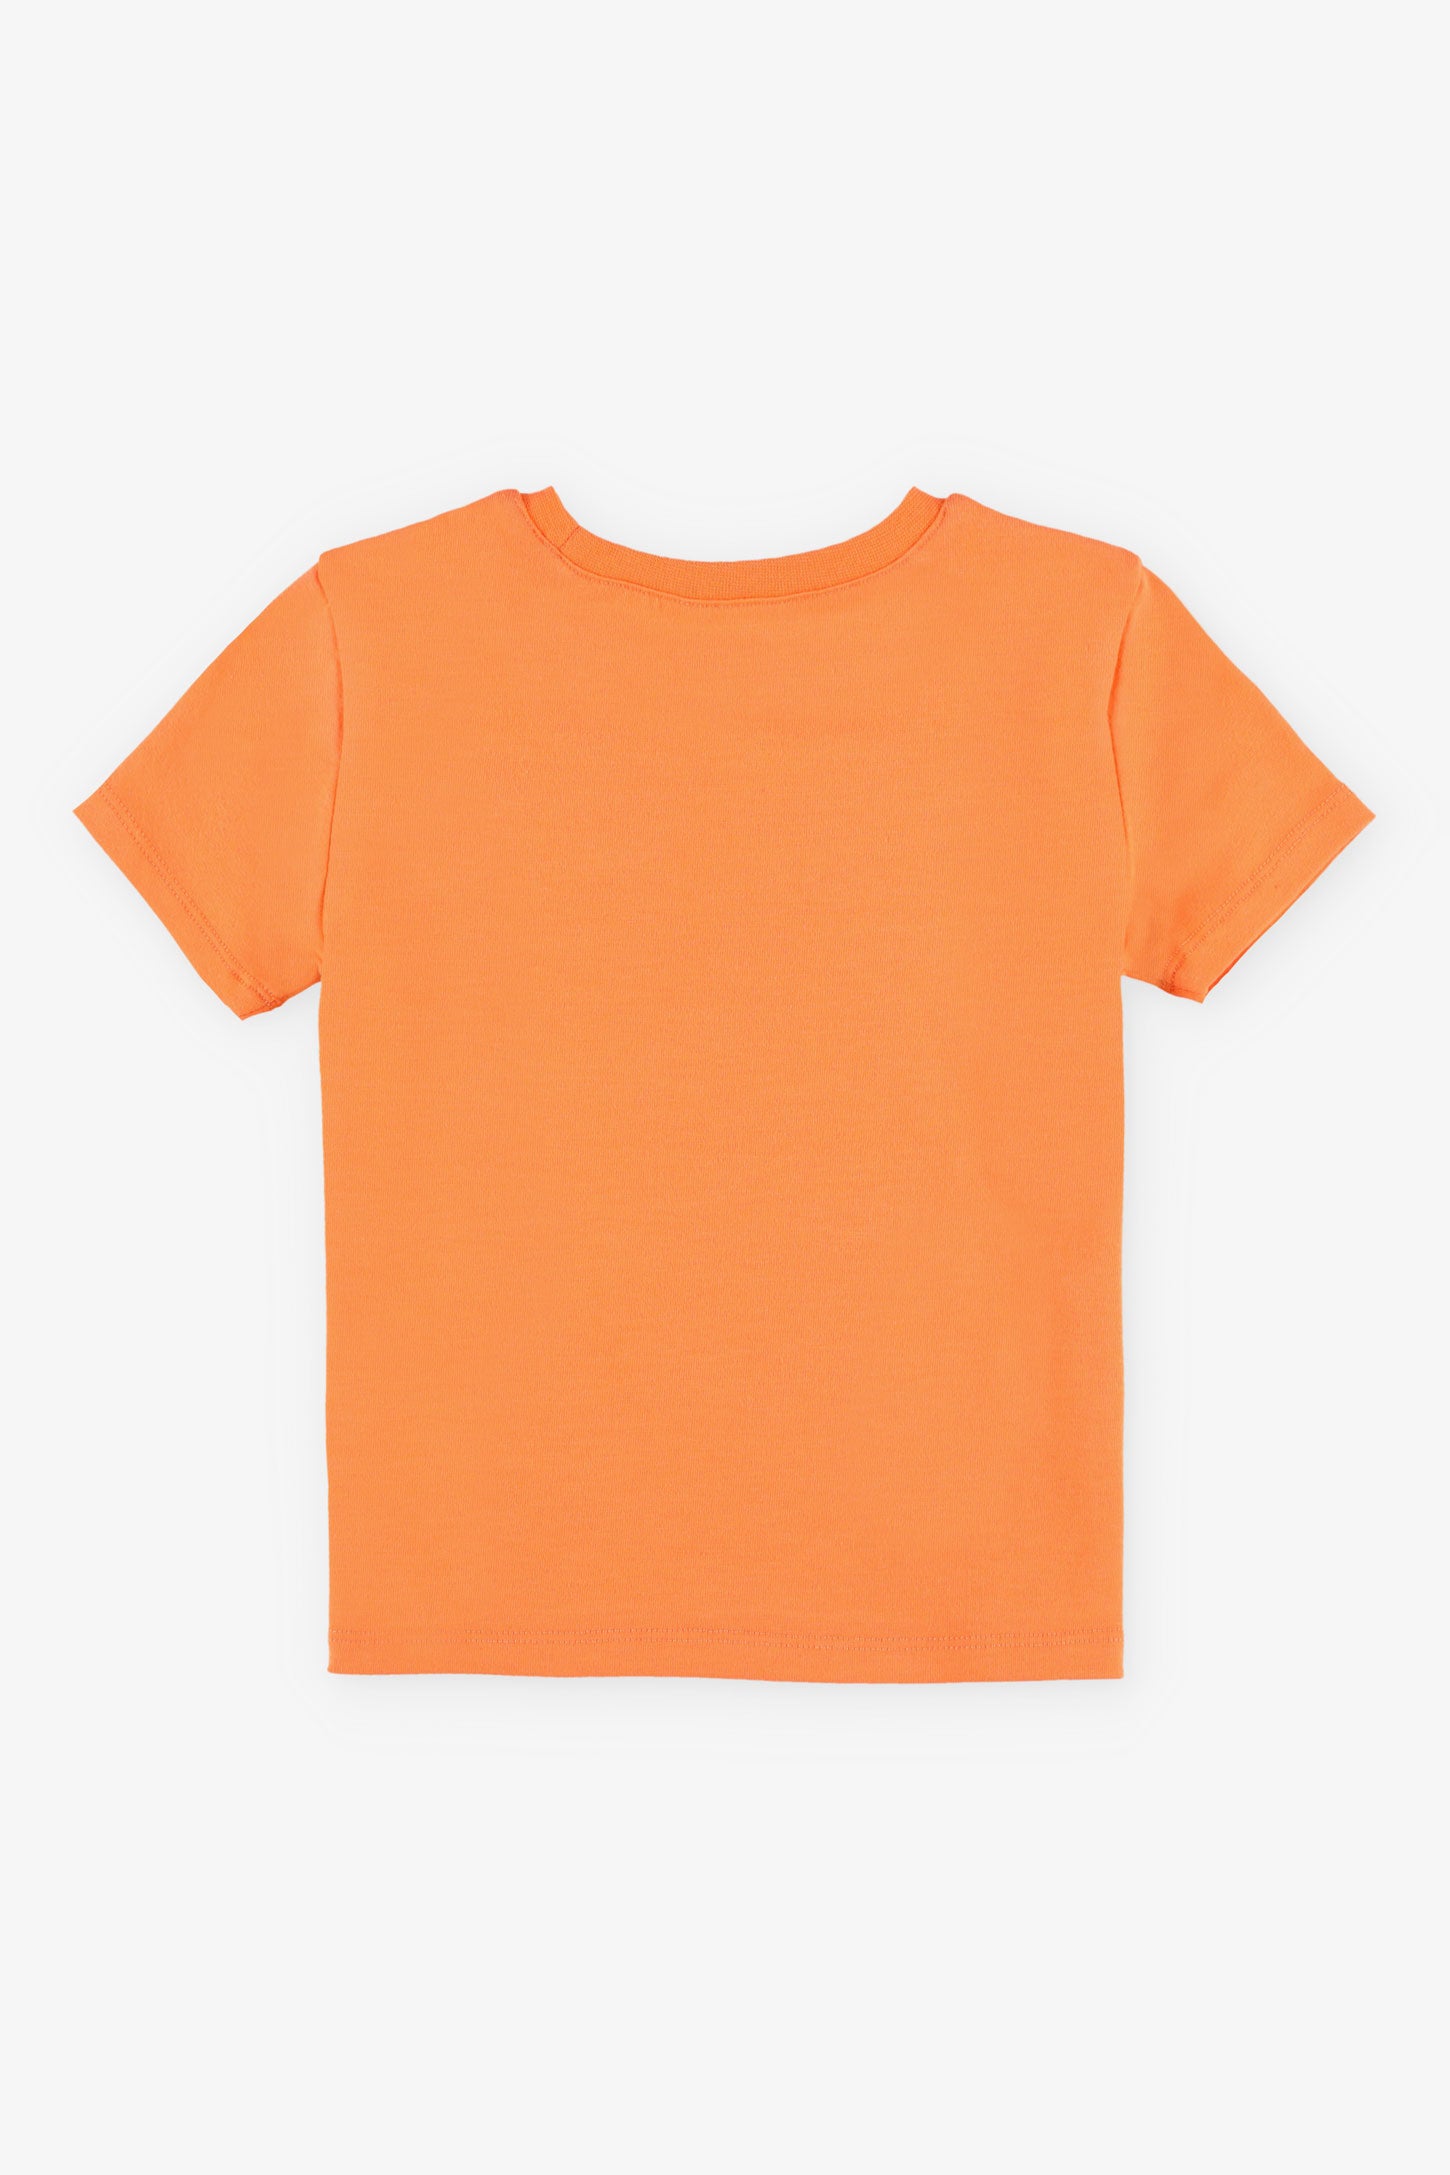 T-shirt col rond coupe droite coton, 2/15$ - Bébé garçon && ORANGE